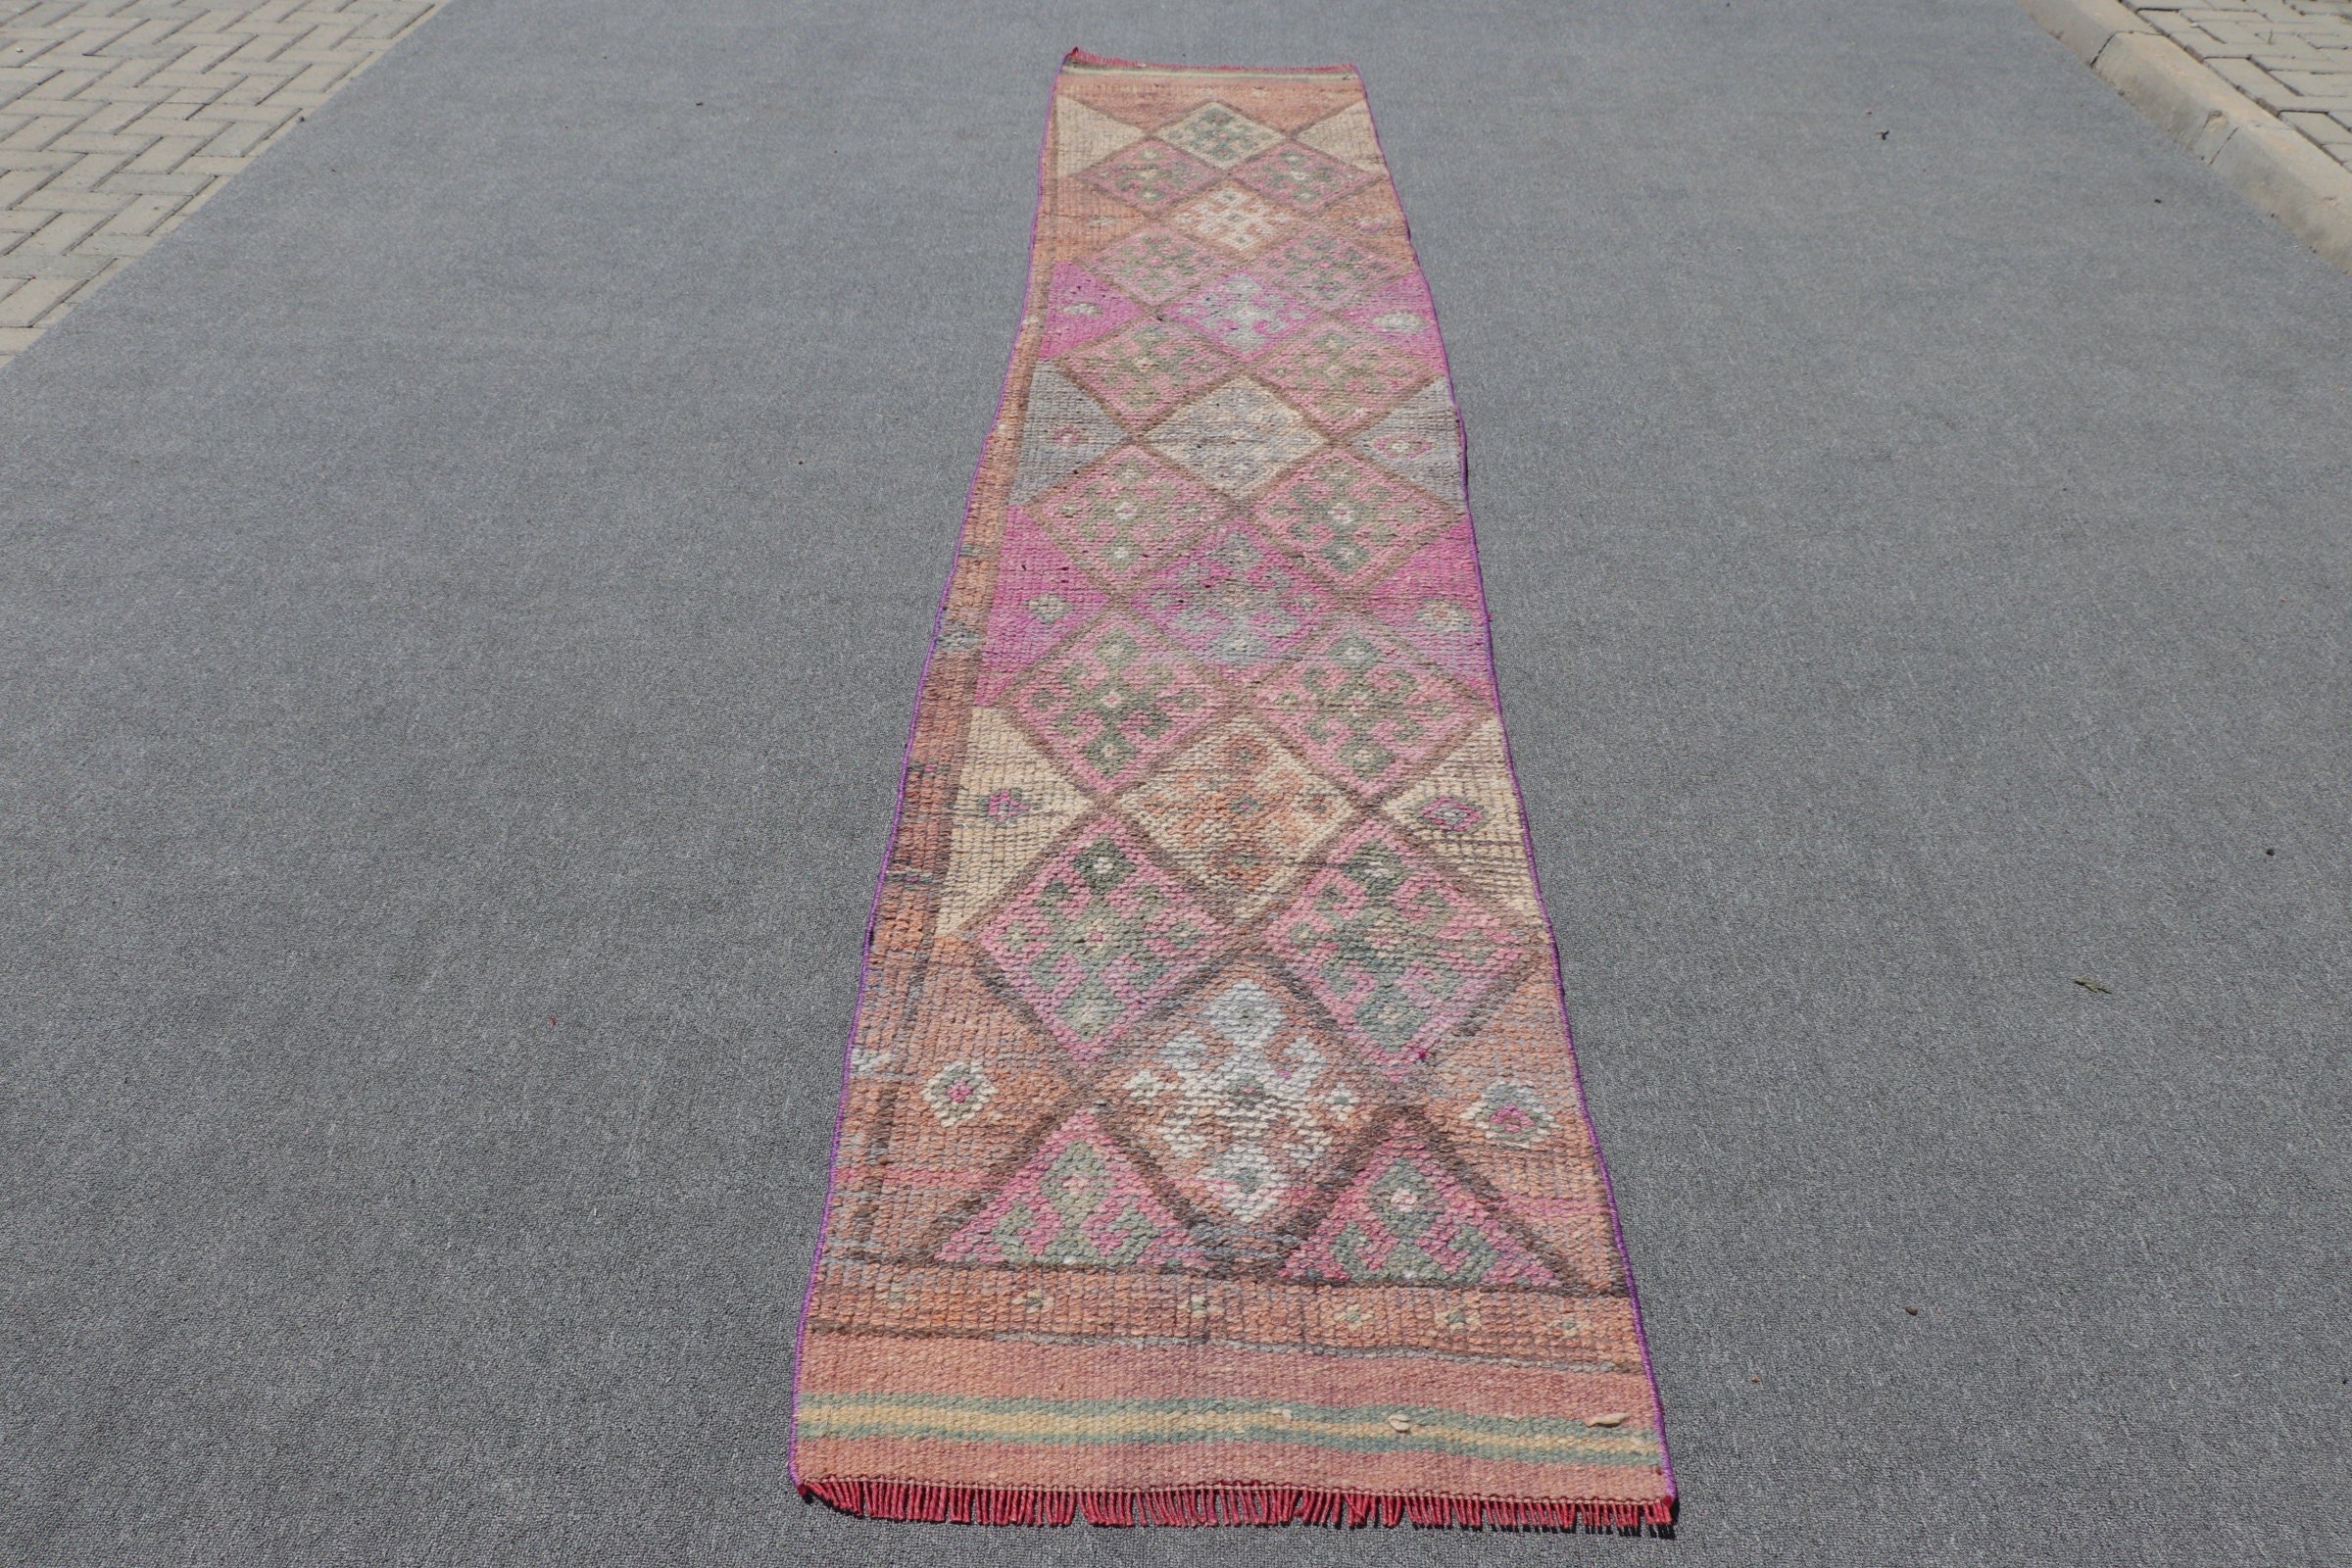 Moroccan Rug, Stair Rugs, Vintage Rugs, Pink  2.3x11.7 ft Runner Rug, Oushak Rugs, Turkish Rugs, Retro Rug, Rugs for Corridor